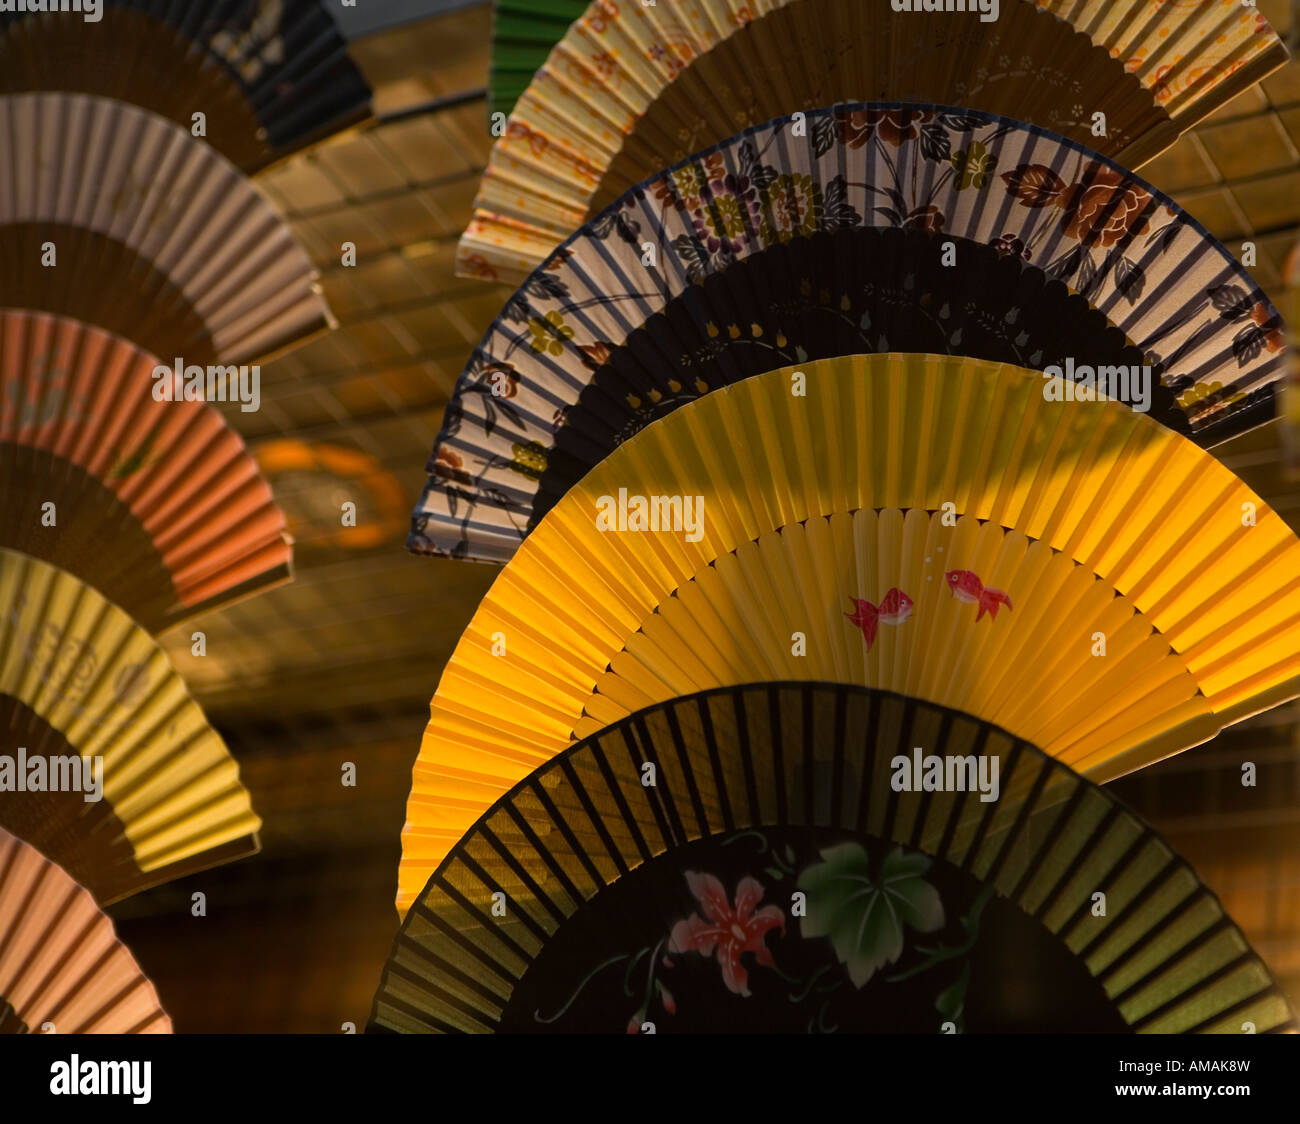 Japanese folding fans at sunset Stock Photo